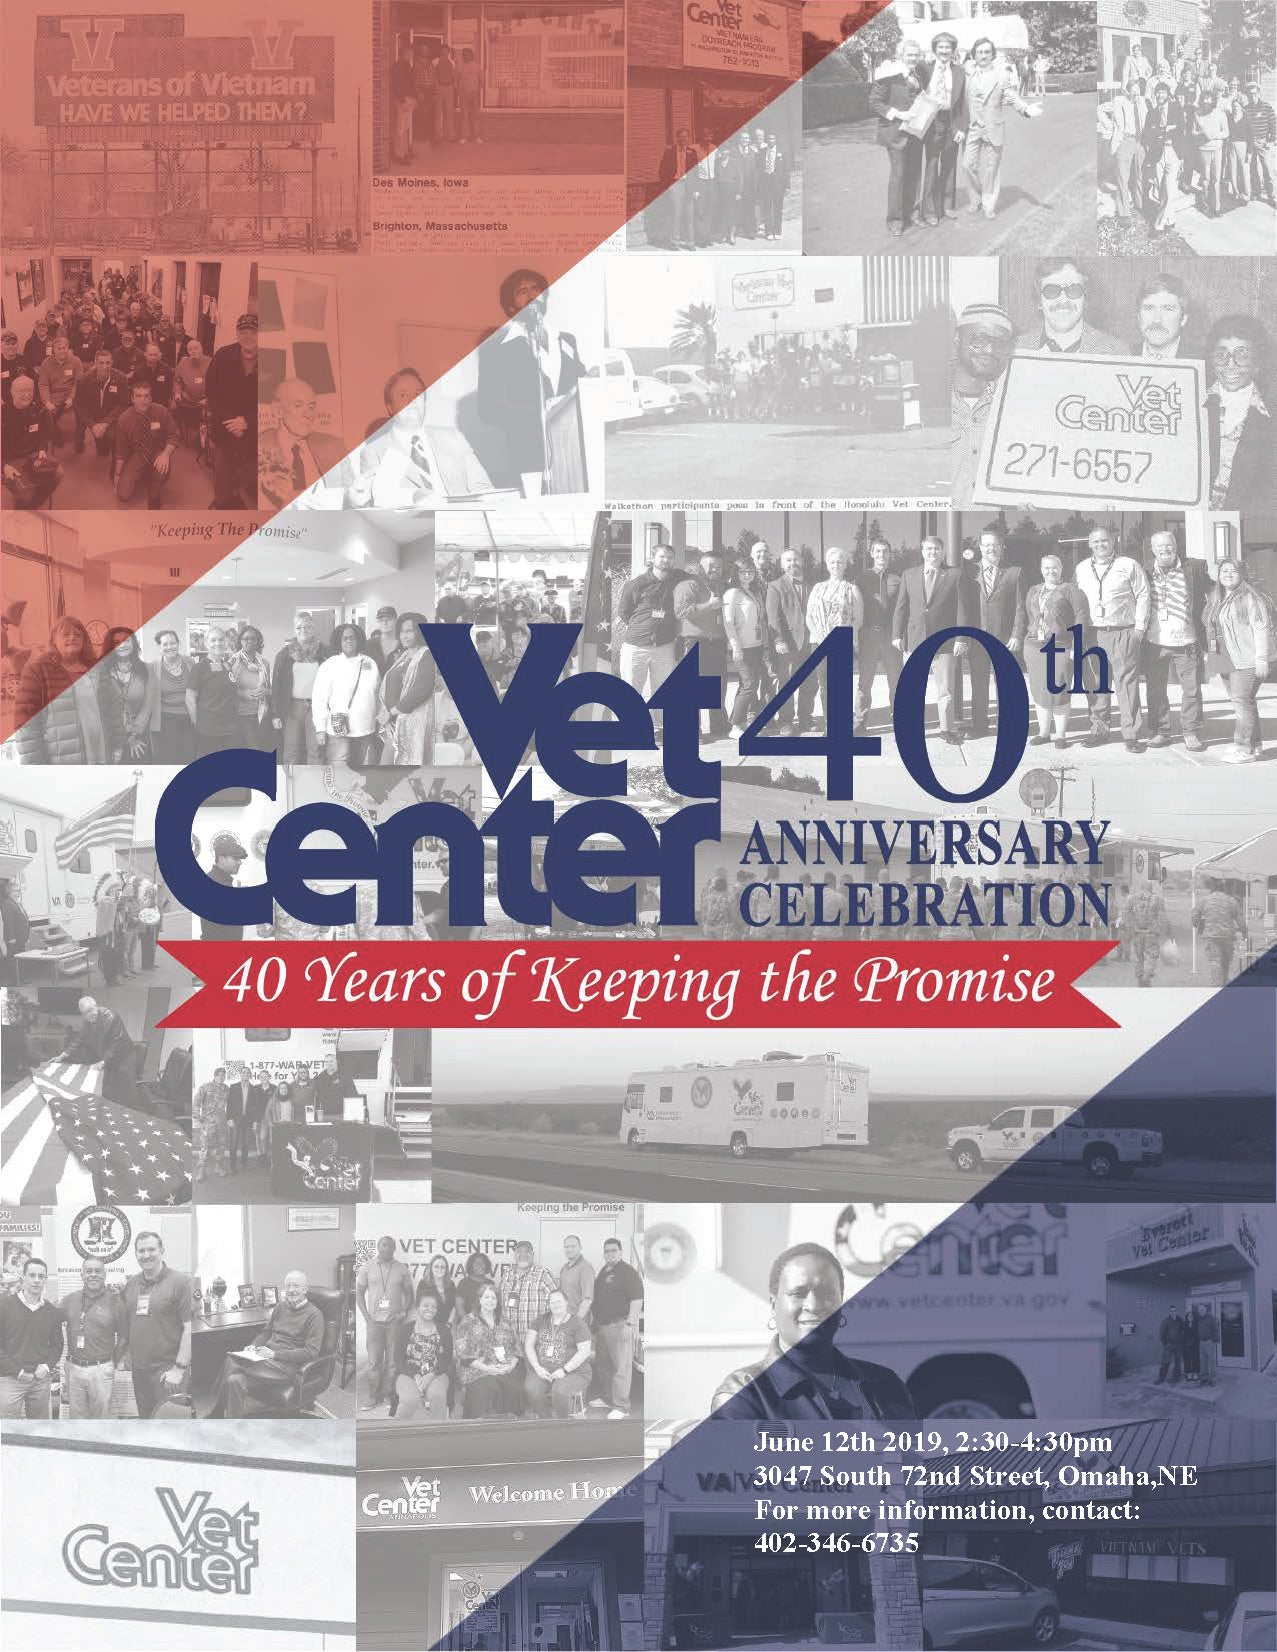 Vet Center 40th Anniversary Celebration - Omaha flyer